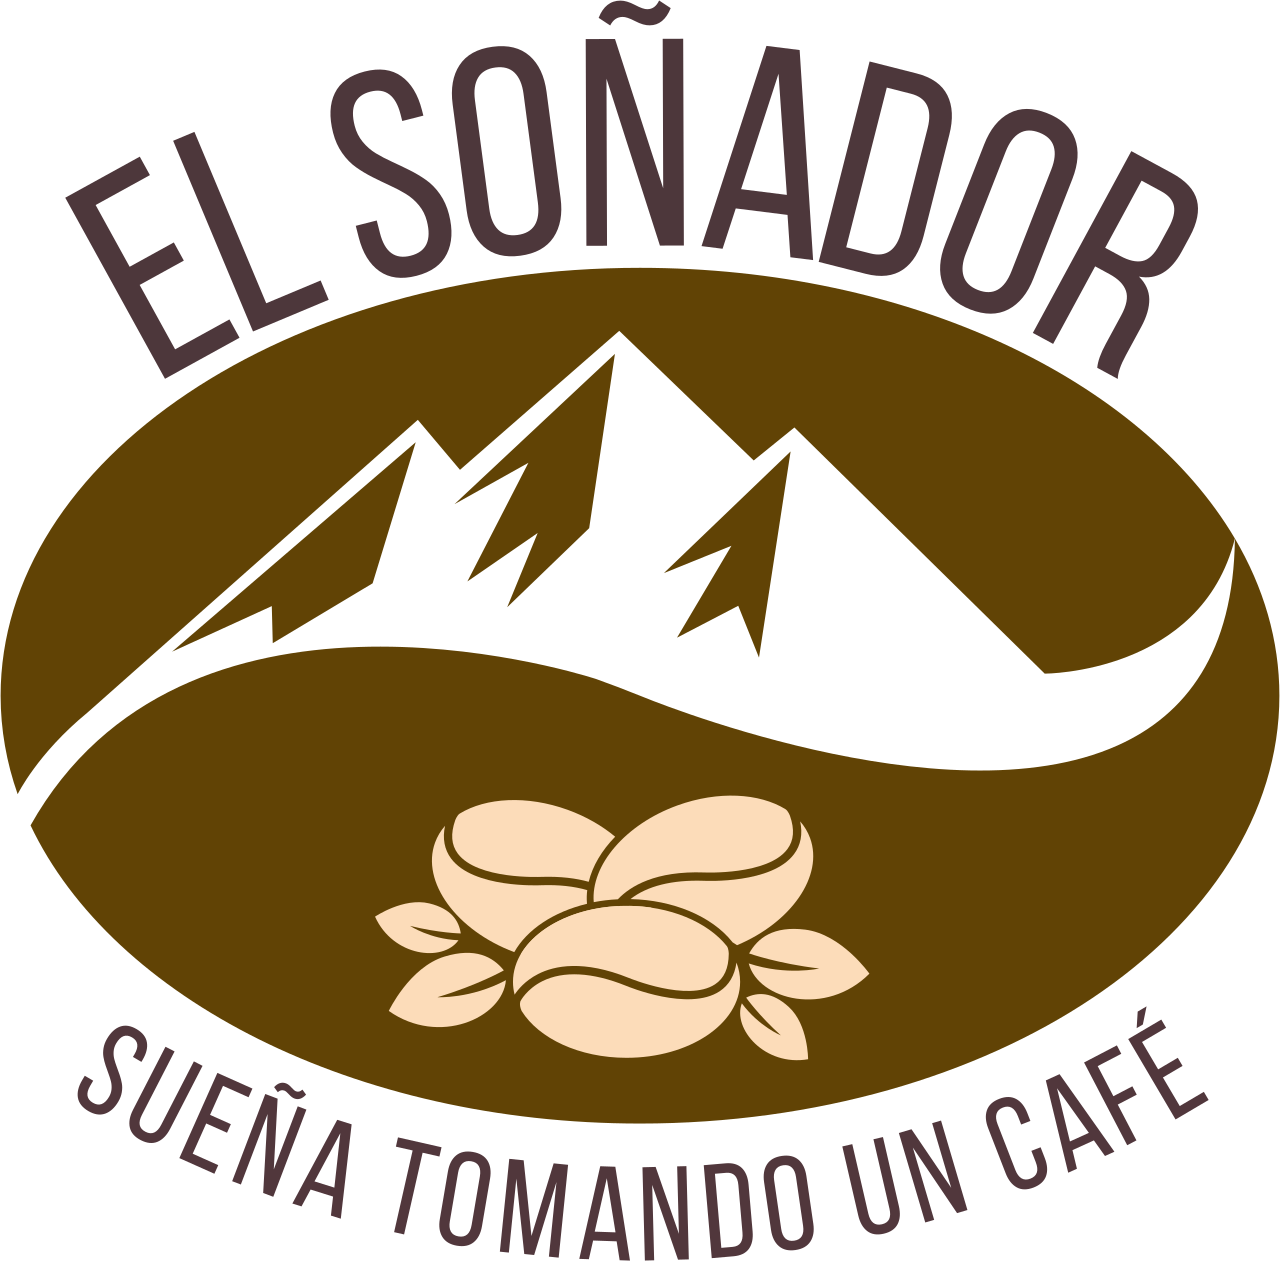 EL SOÑADOR's web page